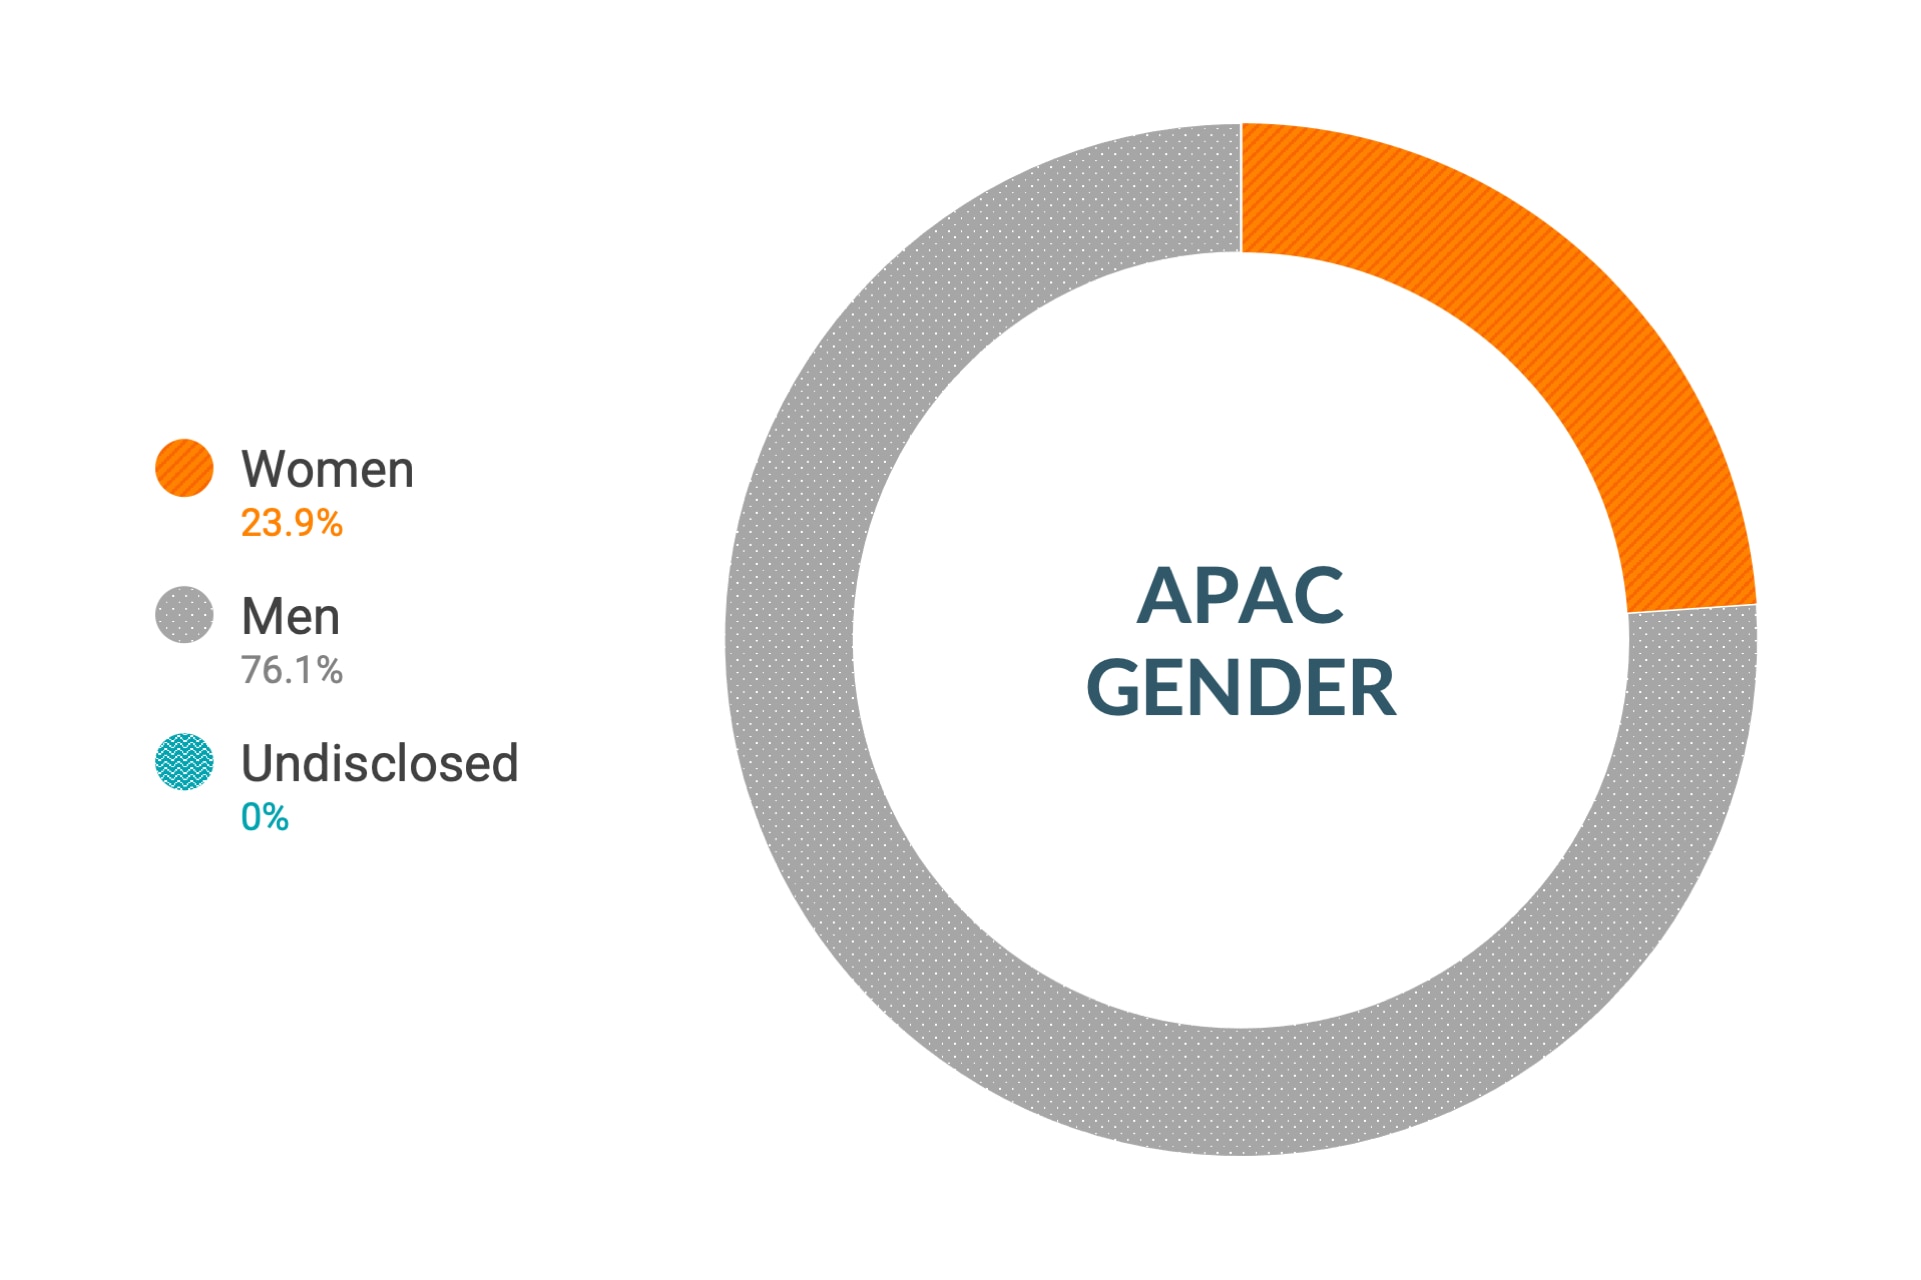 Dati su diversità e inclusione per genere in Asia Pacific di Cloudera: donne 23%, uomini 76%, non dichiarato 1%